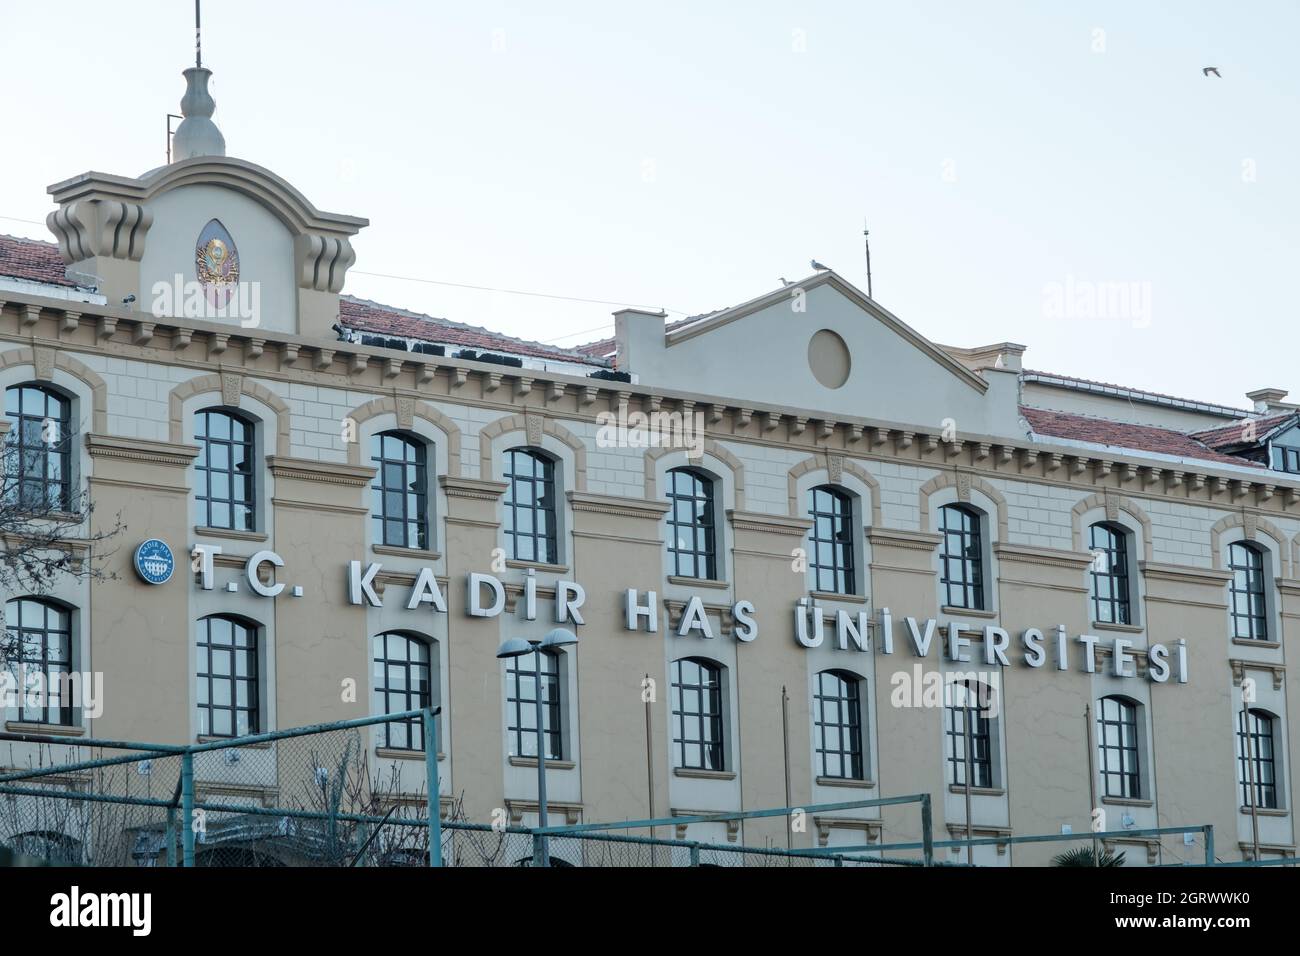 Kadir a une structure universitaire à Istanbul Turquie, campus scolaire.Vue sur l'université et le campus.Concept d'éducation. Banque D'Images